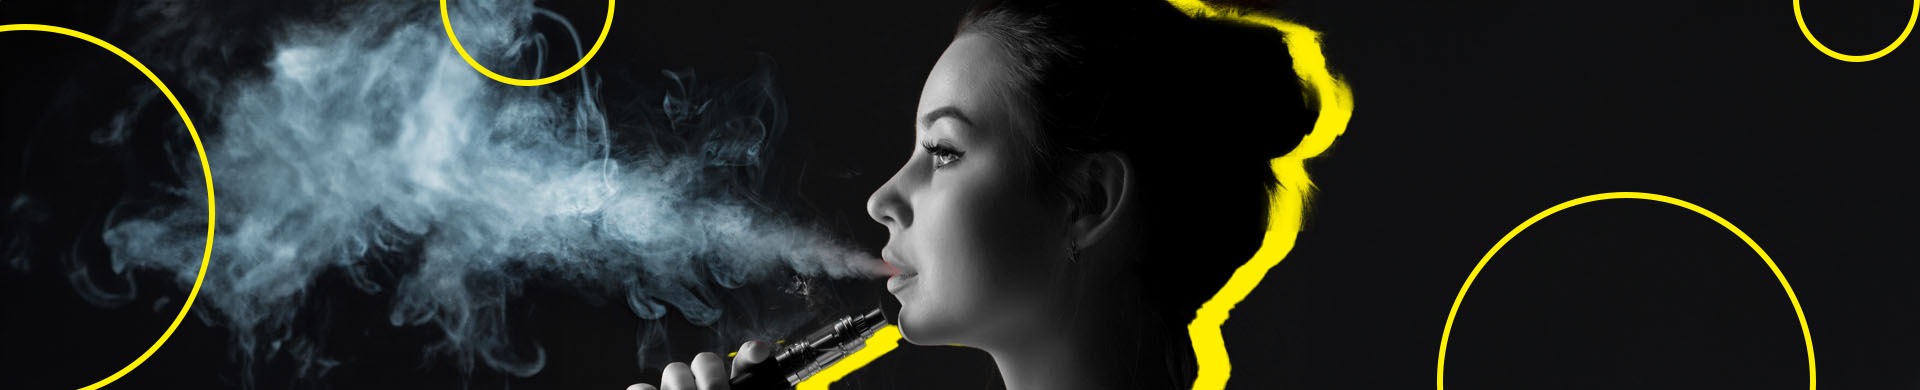 mulher vaporando cigarro eletrônico em um fundo pret